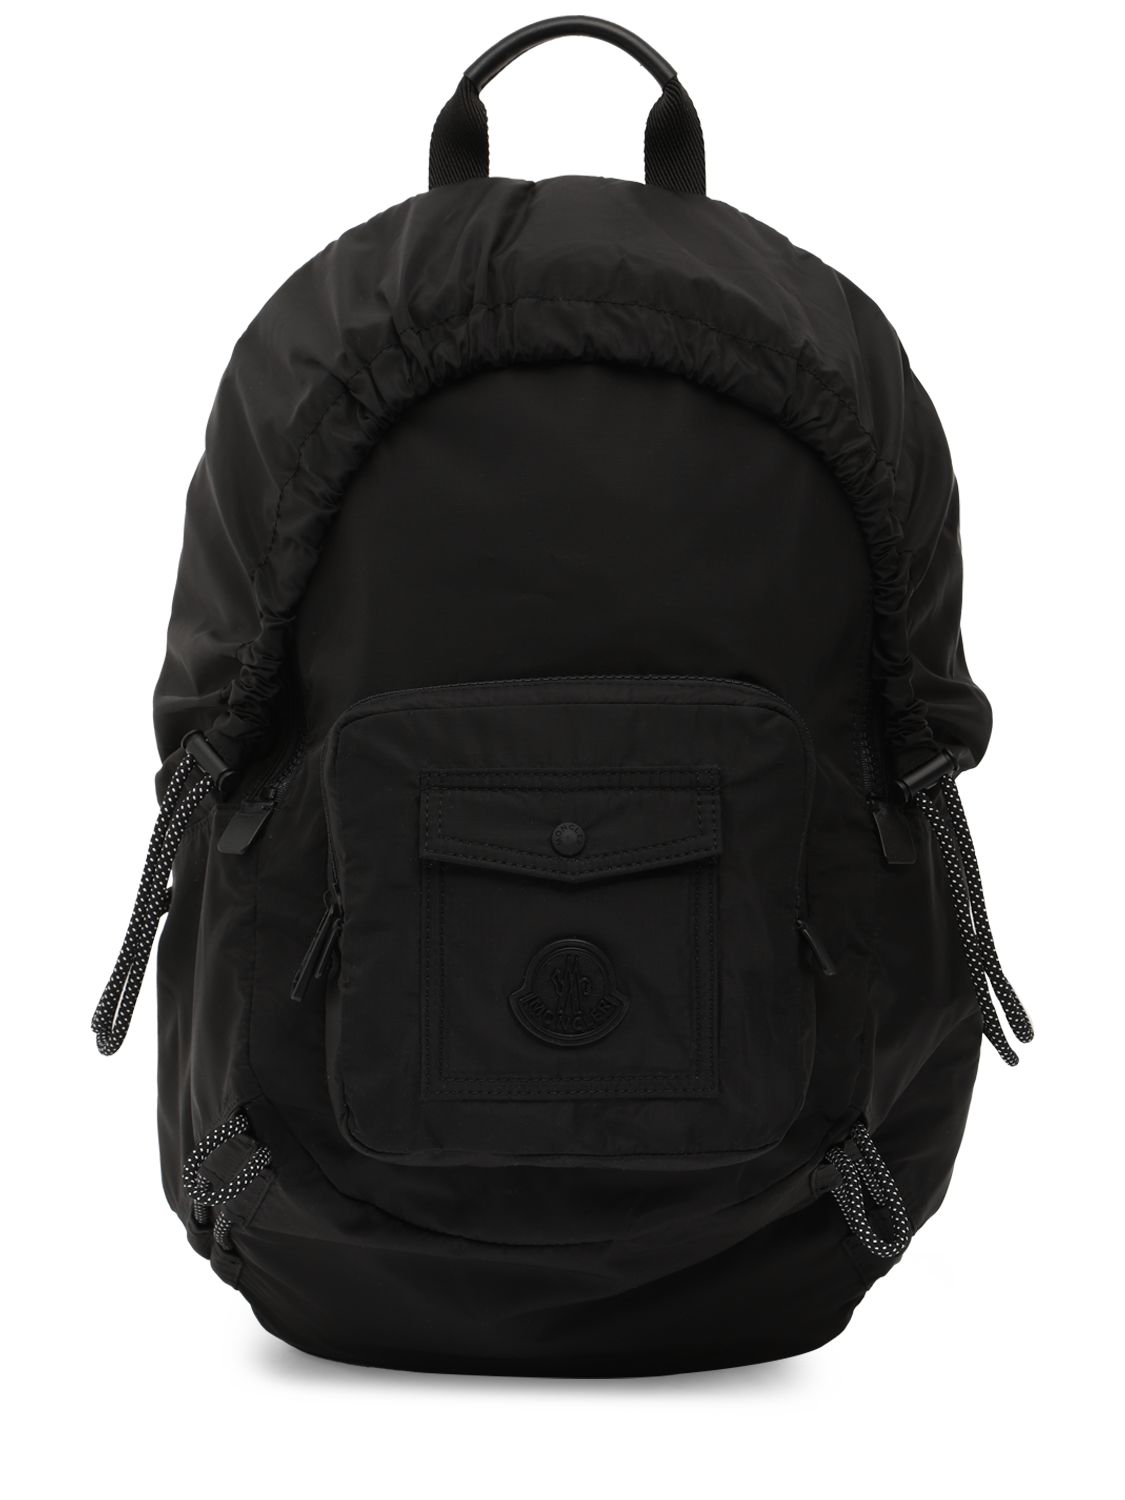 Makaio Ripstop Nylon Backpack